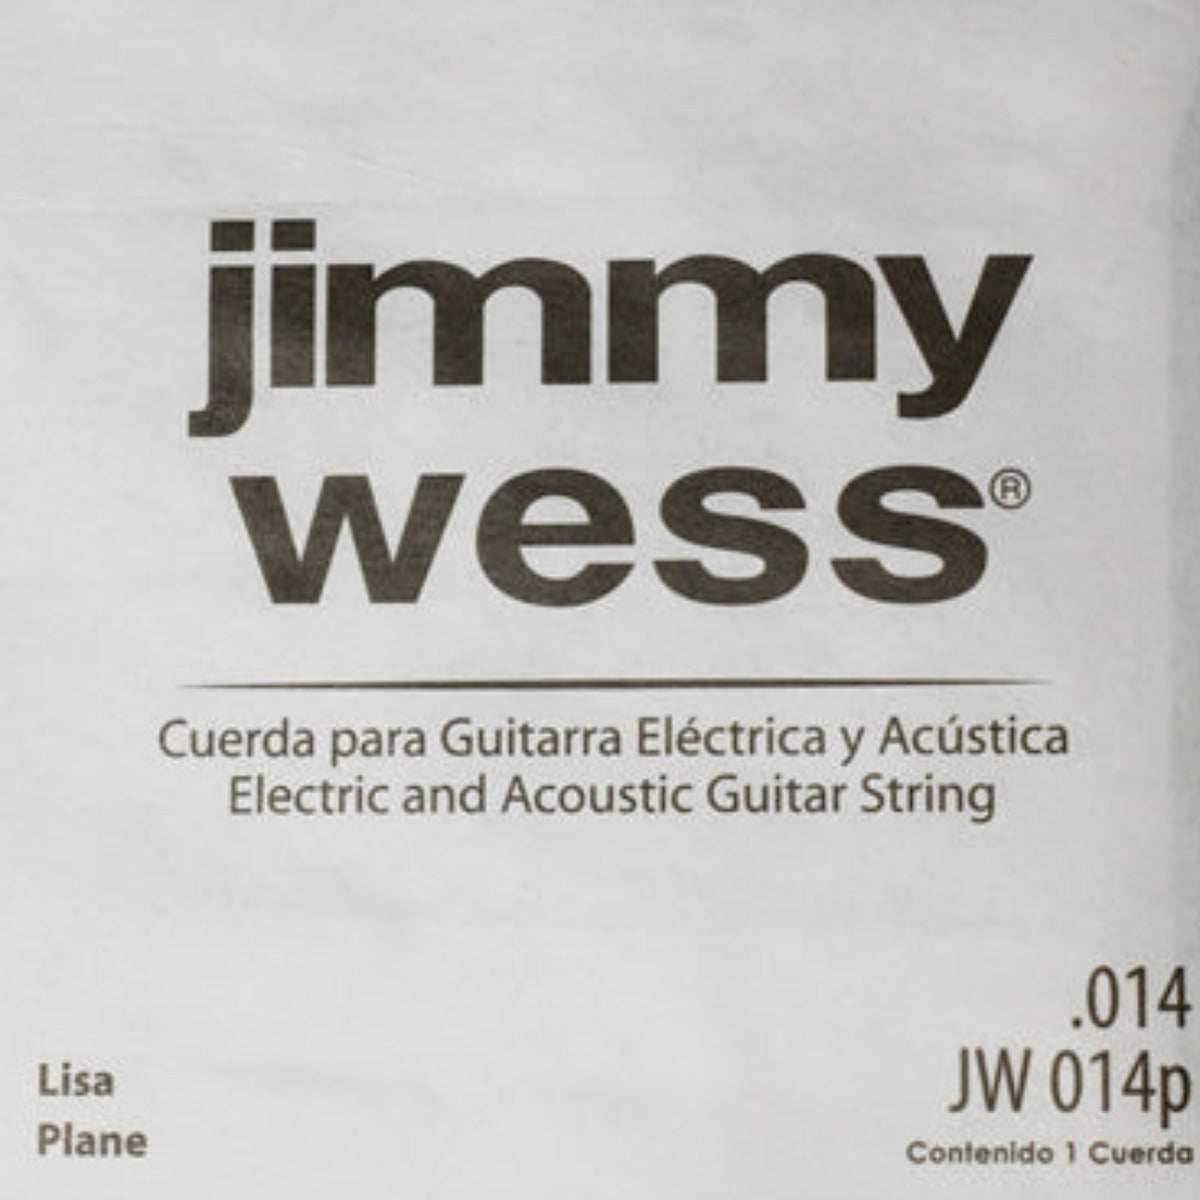 CUERDA P/GUITARRA ELECTRICA/ACUSTICA JIMMYWESS LISA 014 (2A)